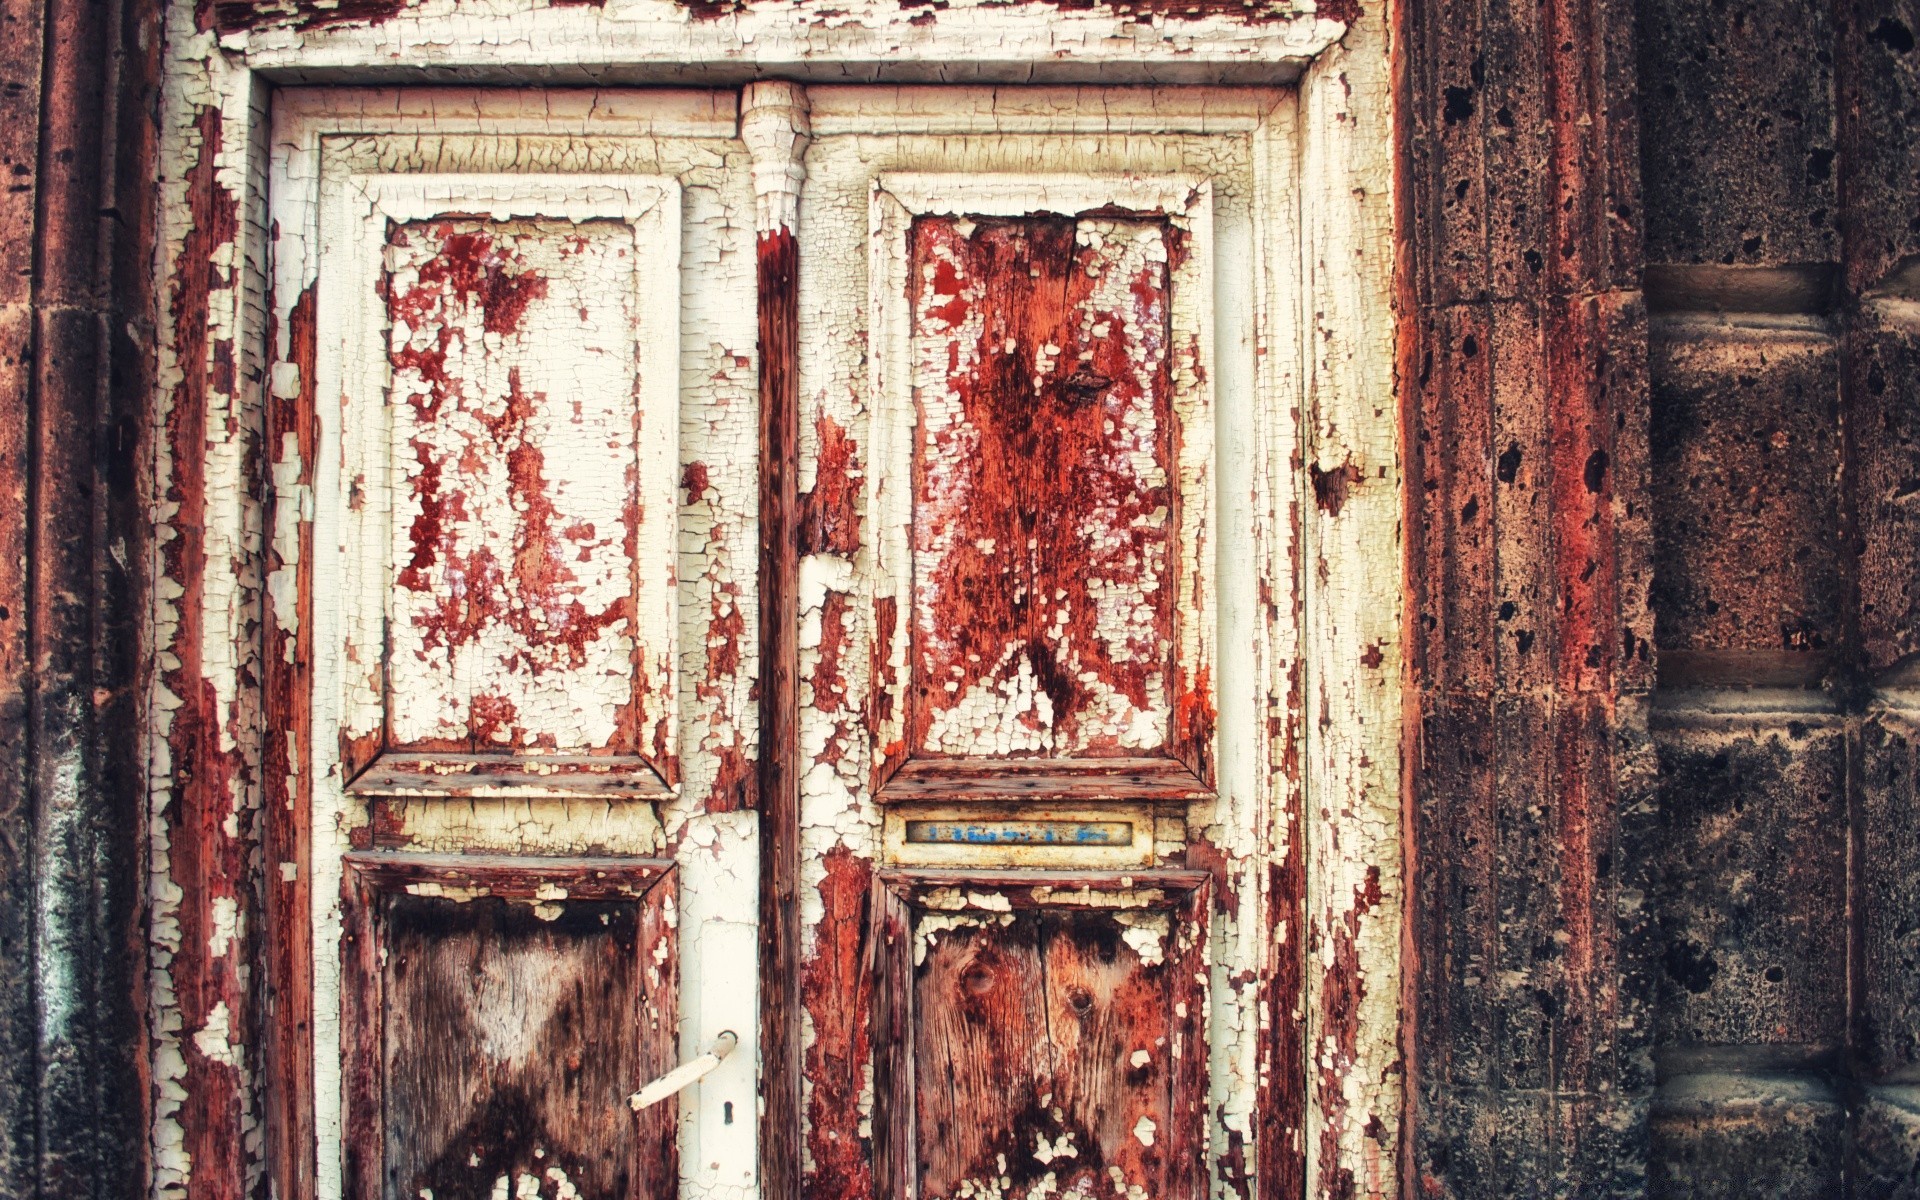 винтаж дверь старый стены грязные архитектура древесины ворота деревянные рабочего стола дом искусство дом вход утюг заброшенный